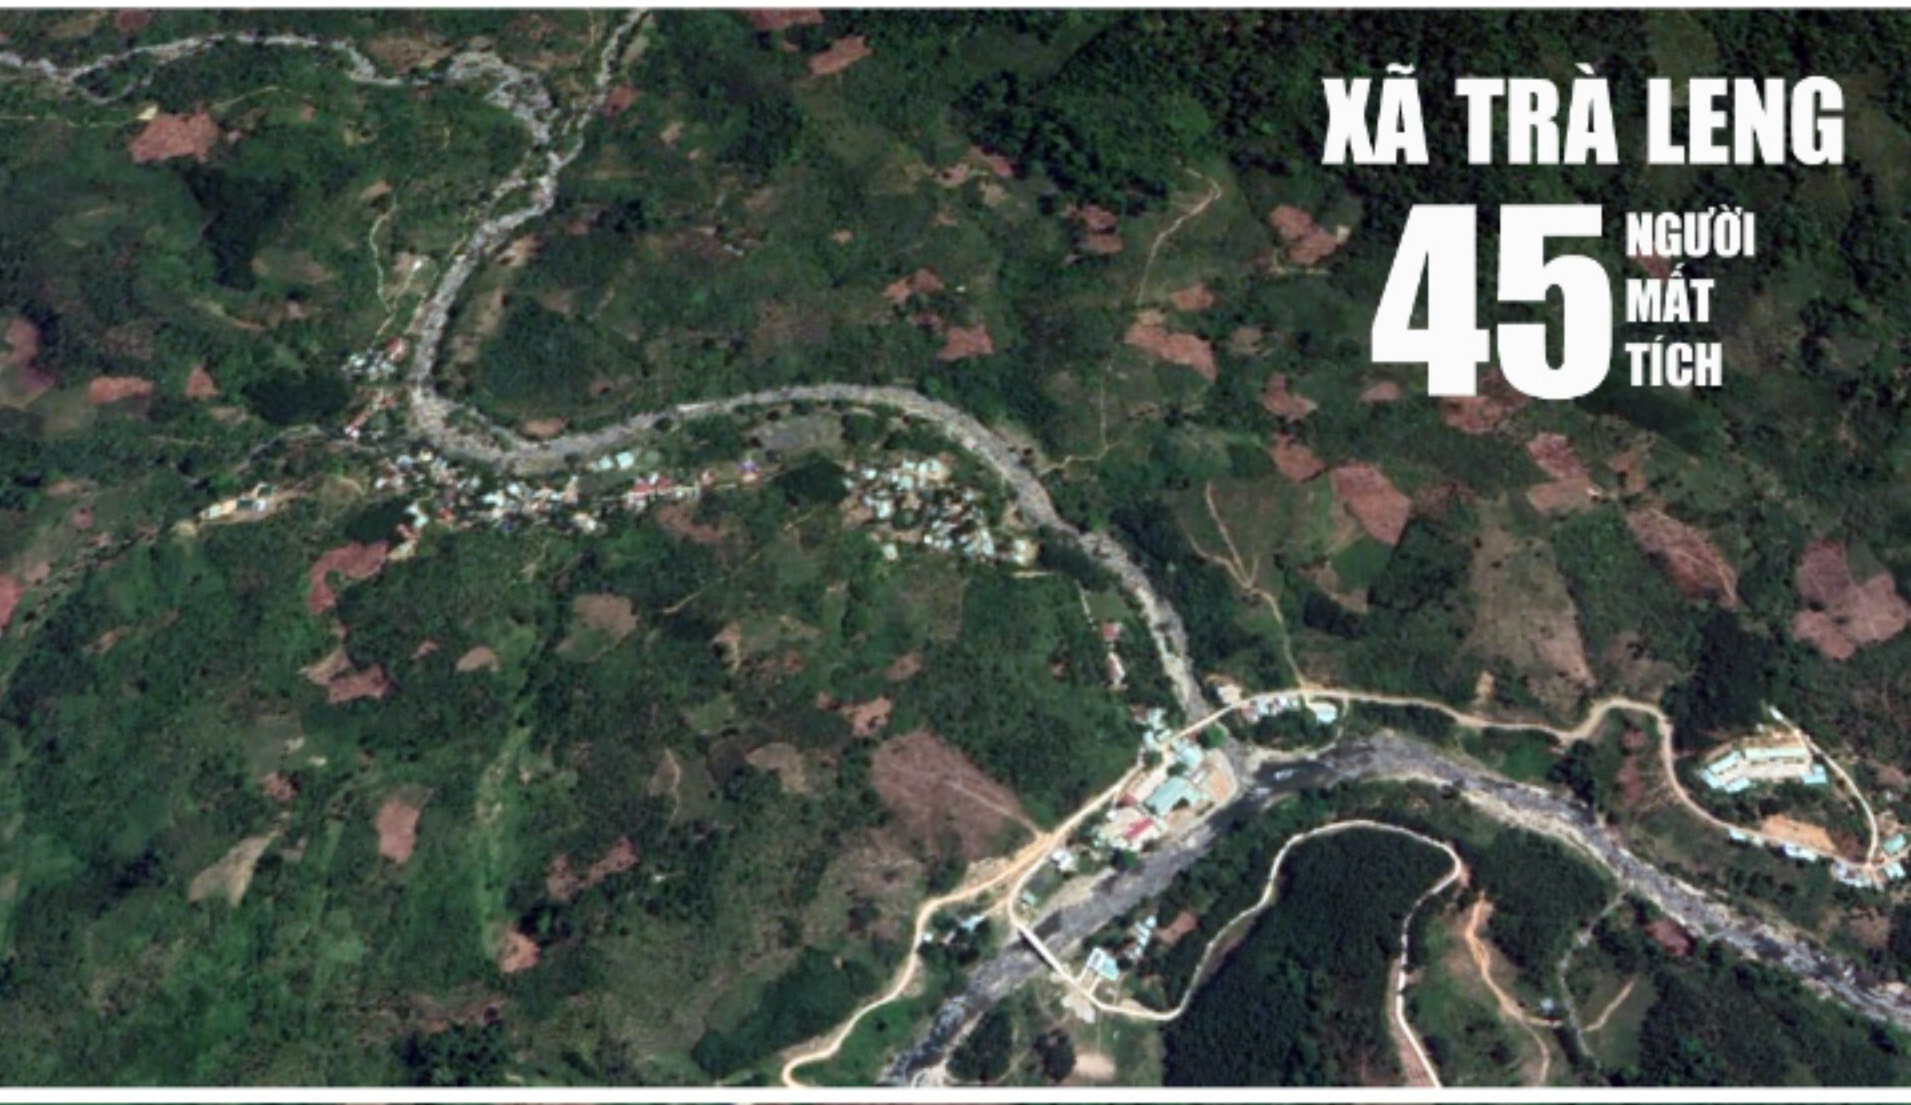 Ảnh vệ tinh khu vực sạt lở đất kinh hoàng tại Quảng Nam vùi lấp 53 người  - Ảnh 2